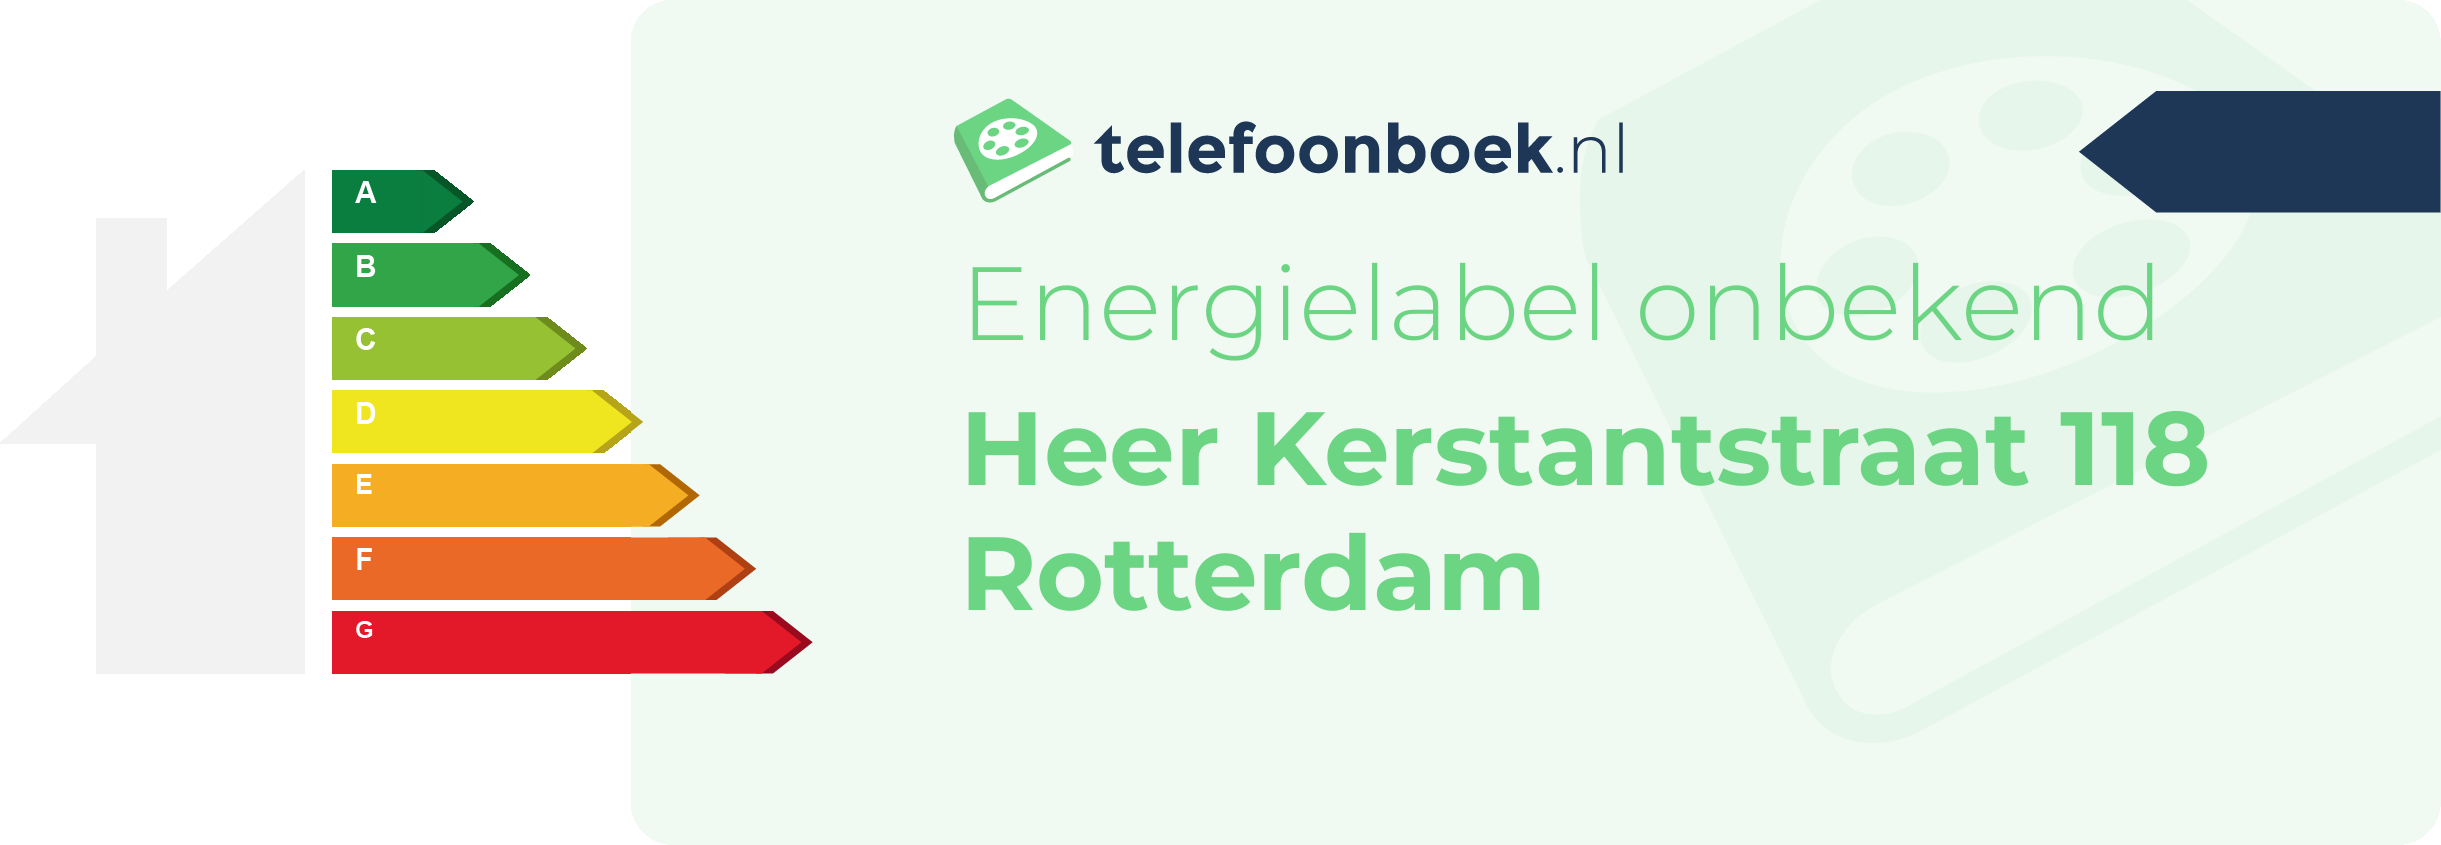 Energielabel Heer Kerstantstraat 118 Rotterdam